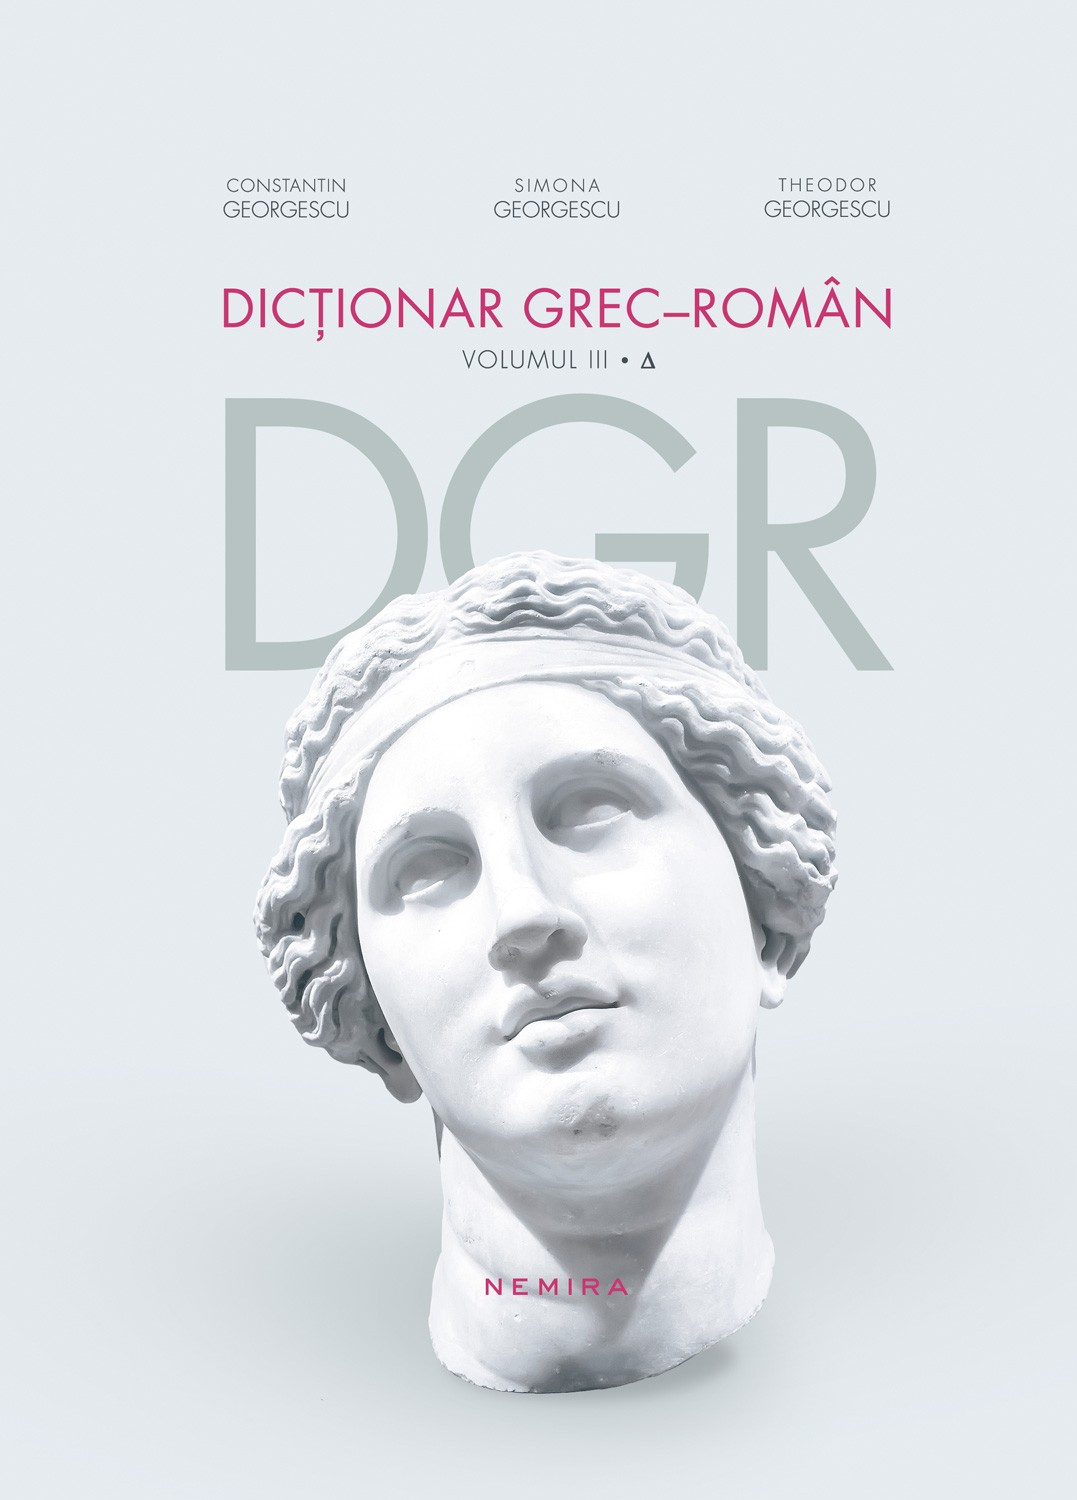 Dictionar Grec-Roman volumul III - Constantin Georgescu, Simona Georgescu, Theodor Georgescu